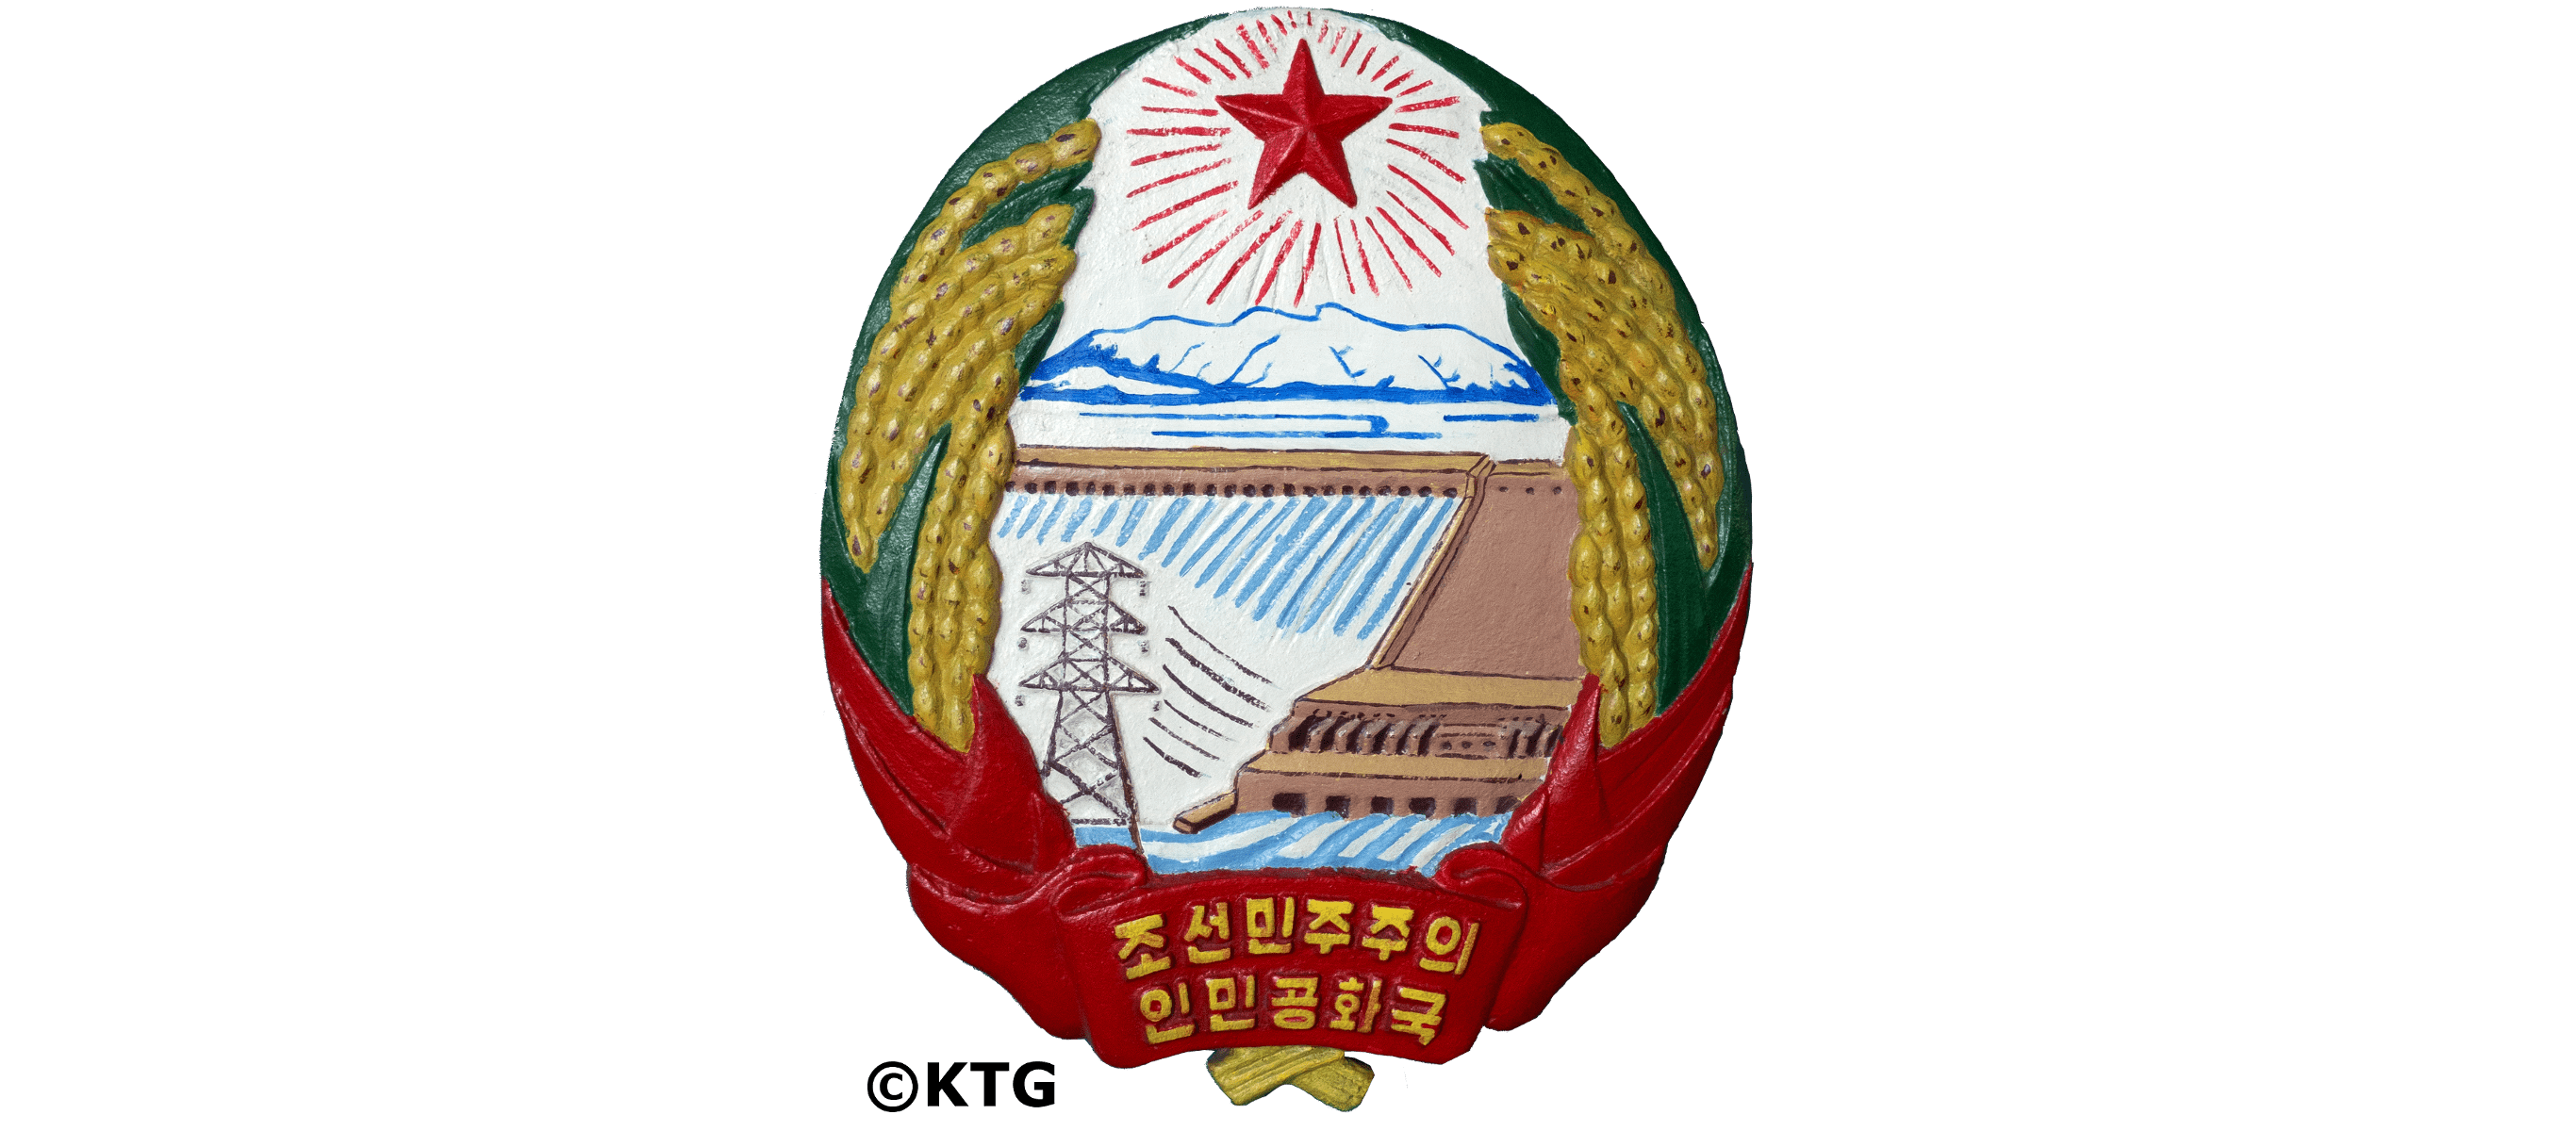 Gobierno Corea del Norte - emblema nacional | KTG&reg; Tours | Informaci&oacute;n sobre el emblema nacional de Corea del Norte y lo que cada s&iacute;mbolo representa. Viaje a Corea